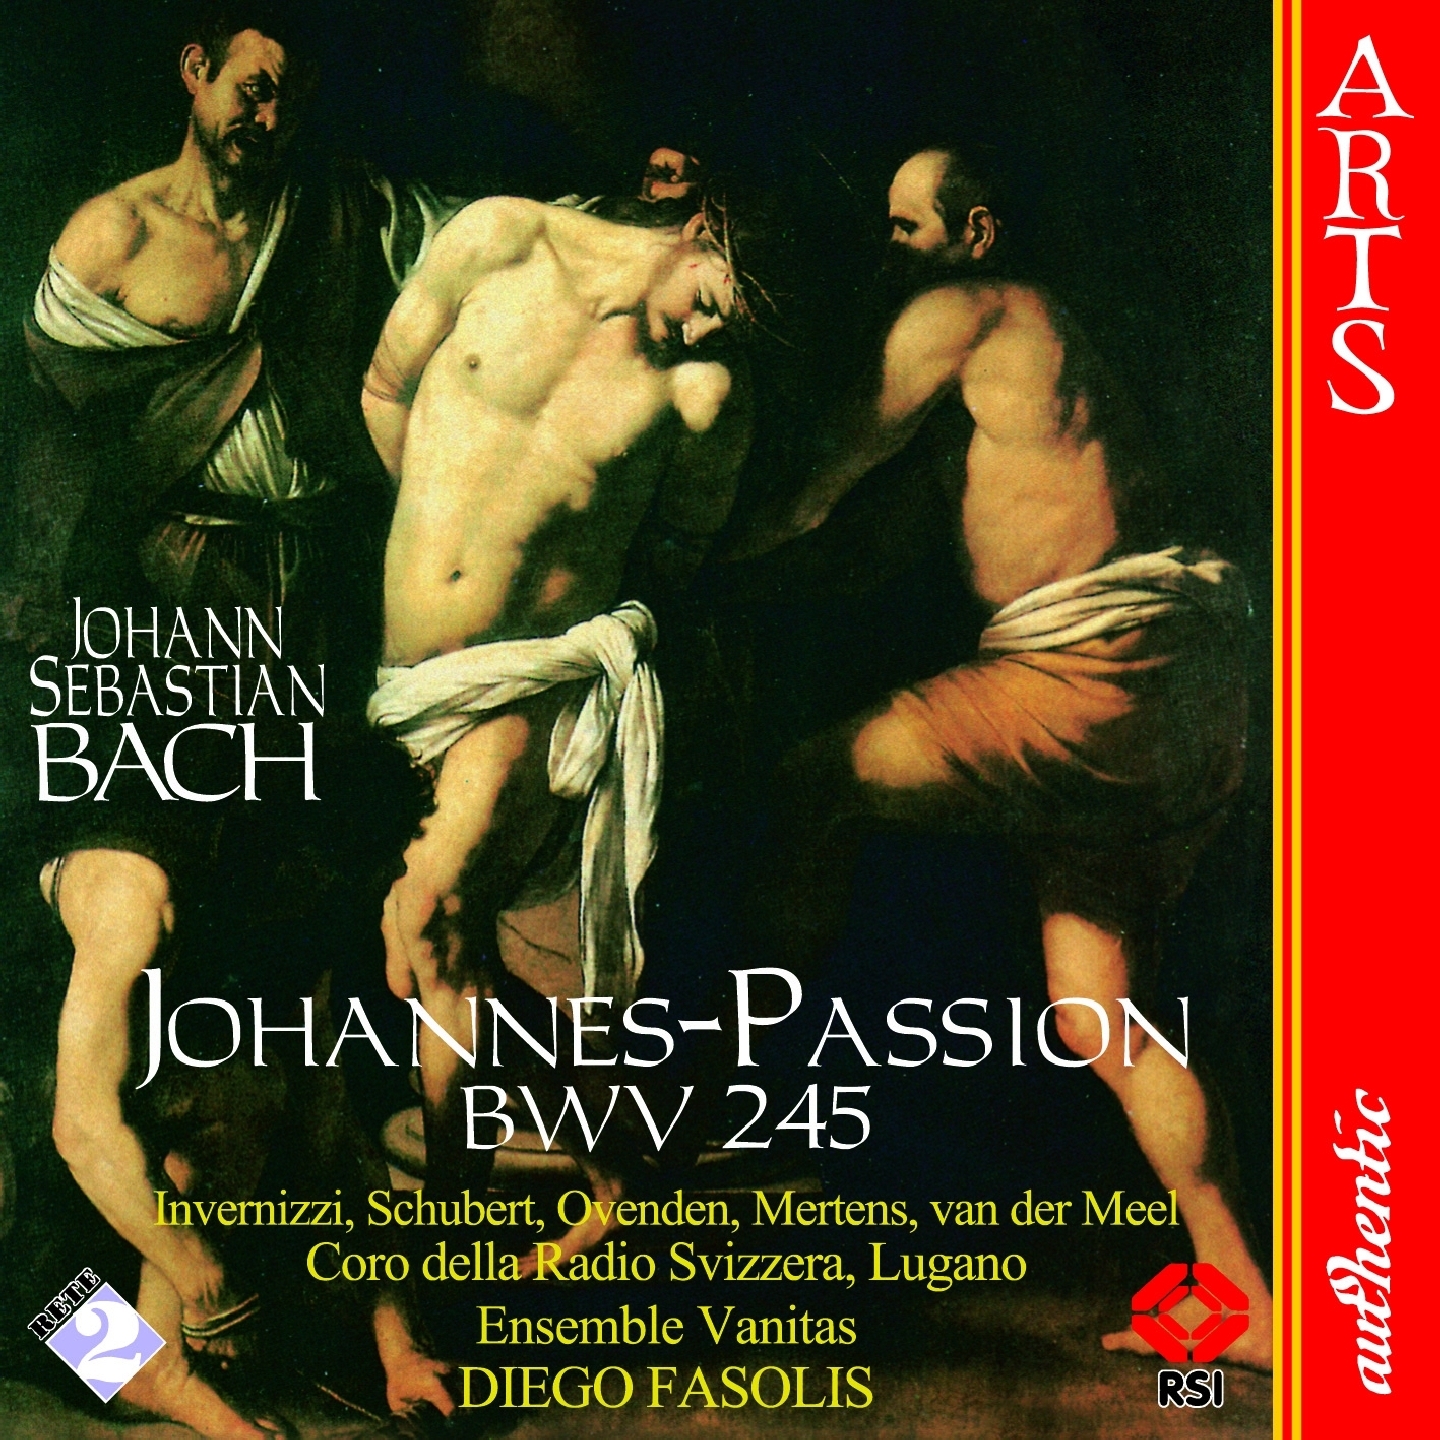 Johannes-Passion, BWV 245, Part I: 13. Aria "Ach, mein Sinn" (Tenor)